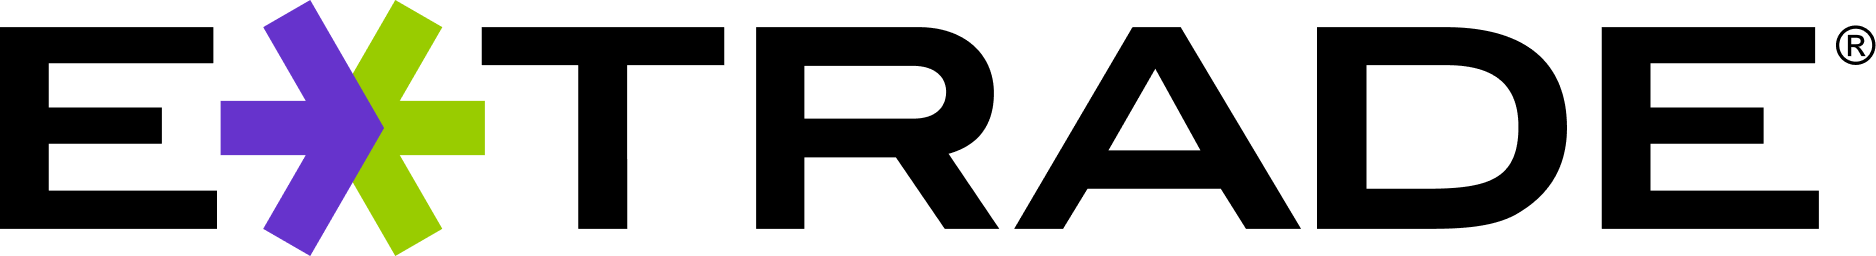 eTrade logo